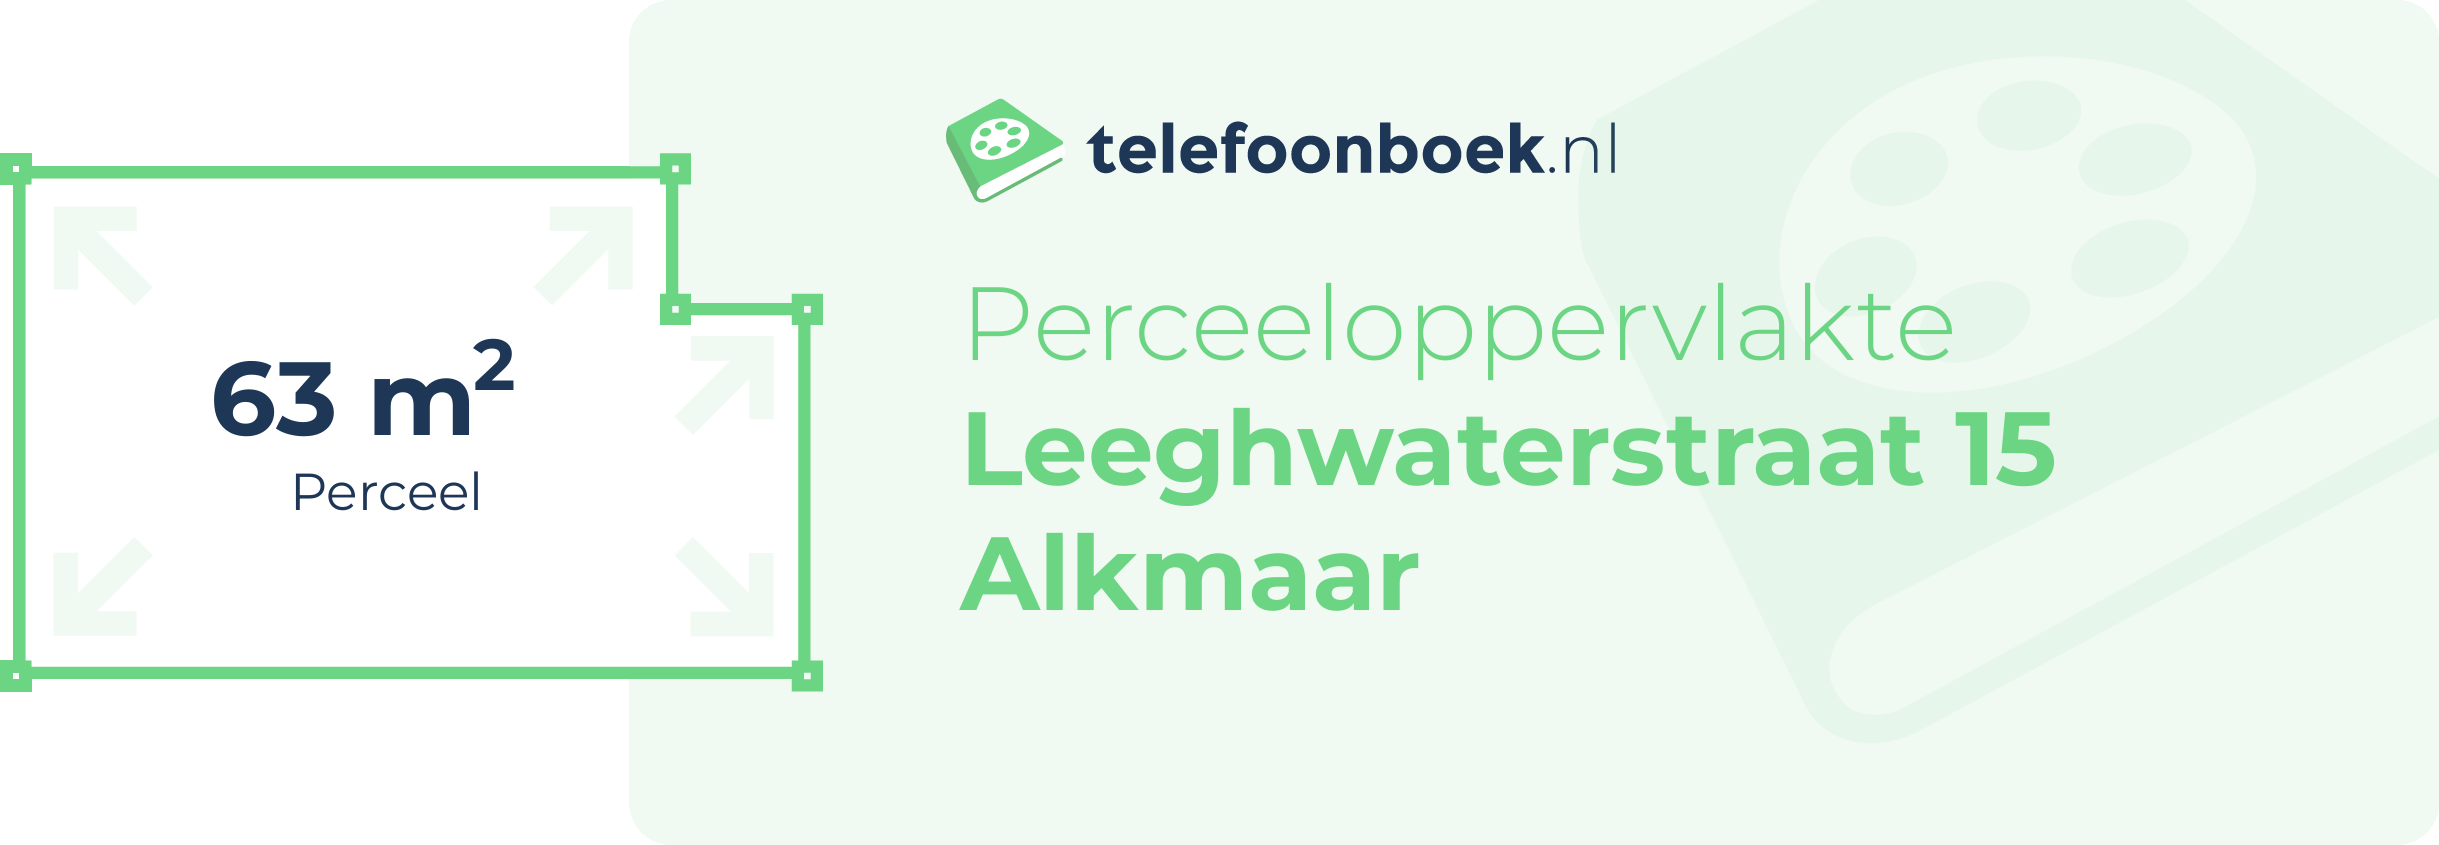 Perceeloppervlakte Leeghwaterstraat 15 Alkmaar